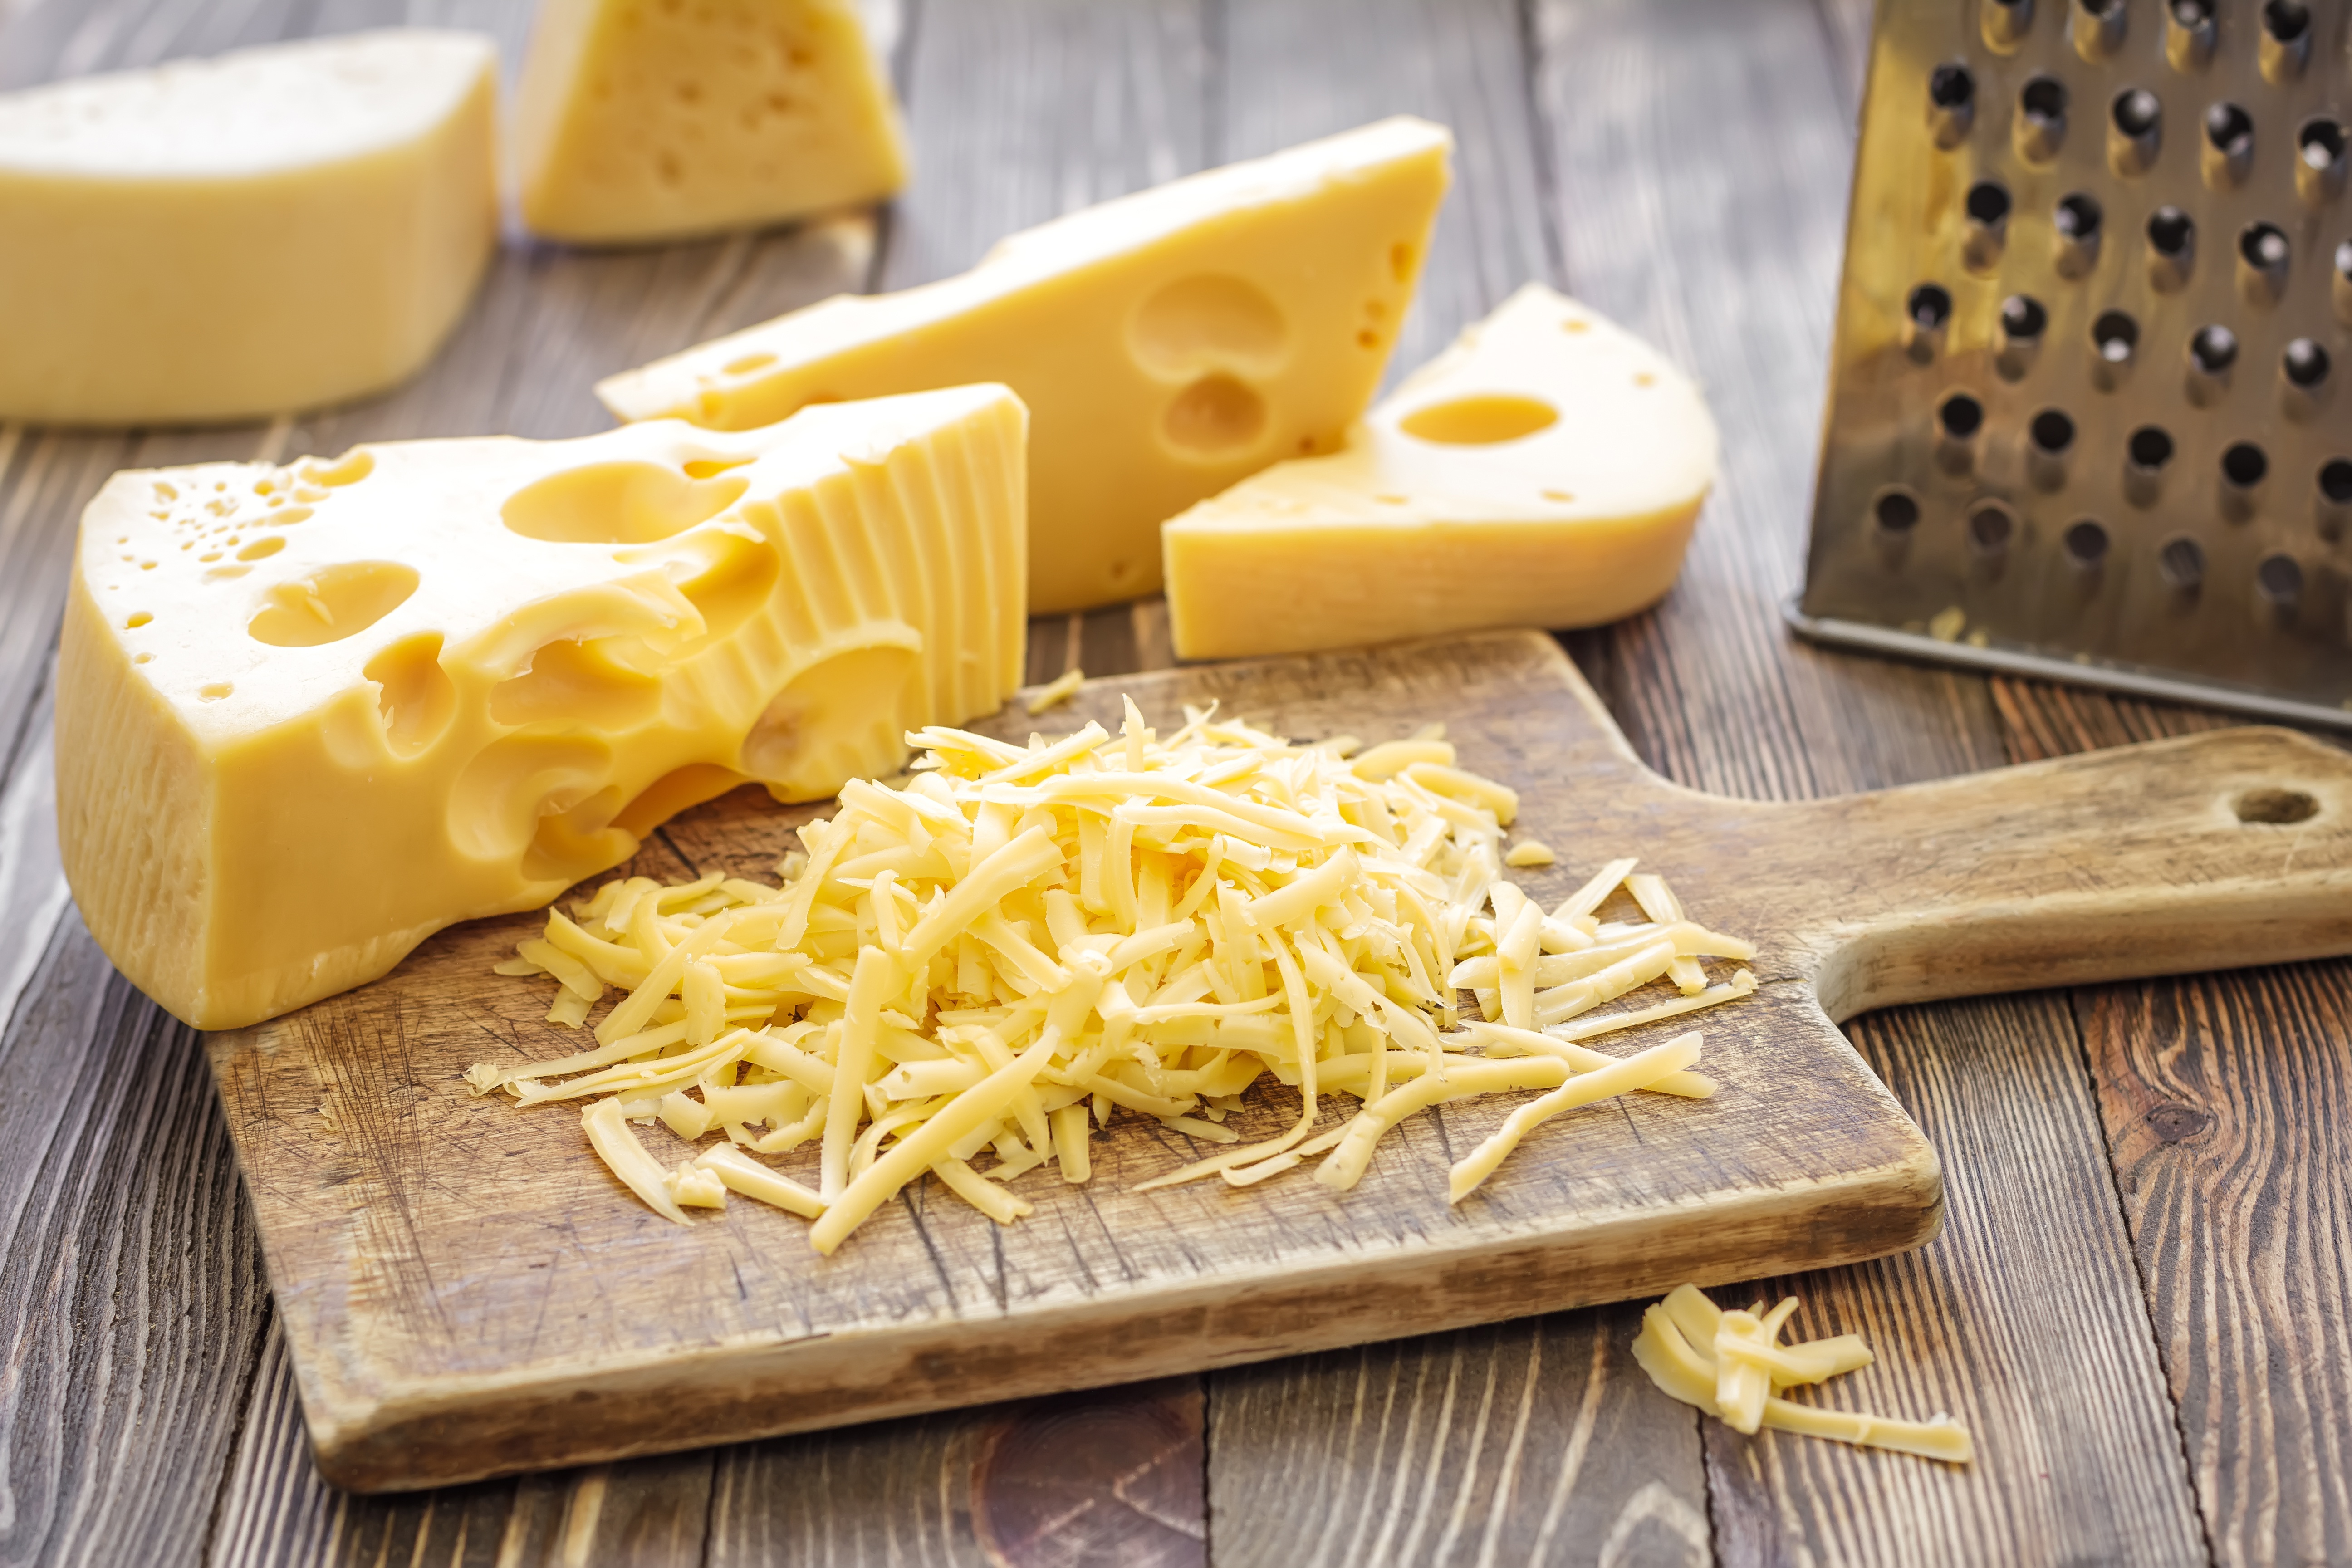 Сонник есть сыр. Сыр Маасдам Швейцария. Цветной сыр. Сыр нарезанный. Сыр твердый.